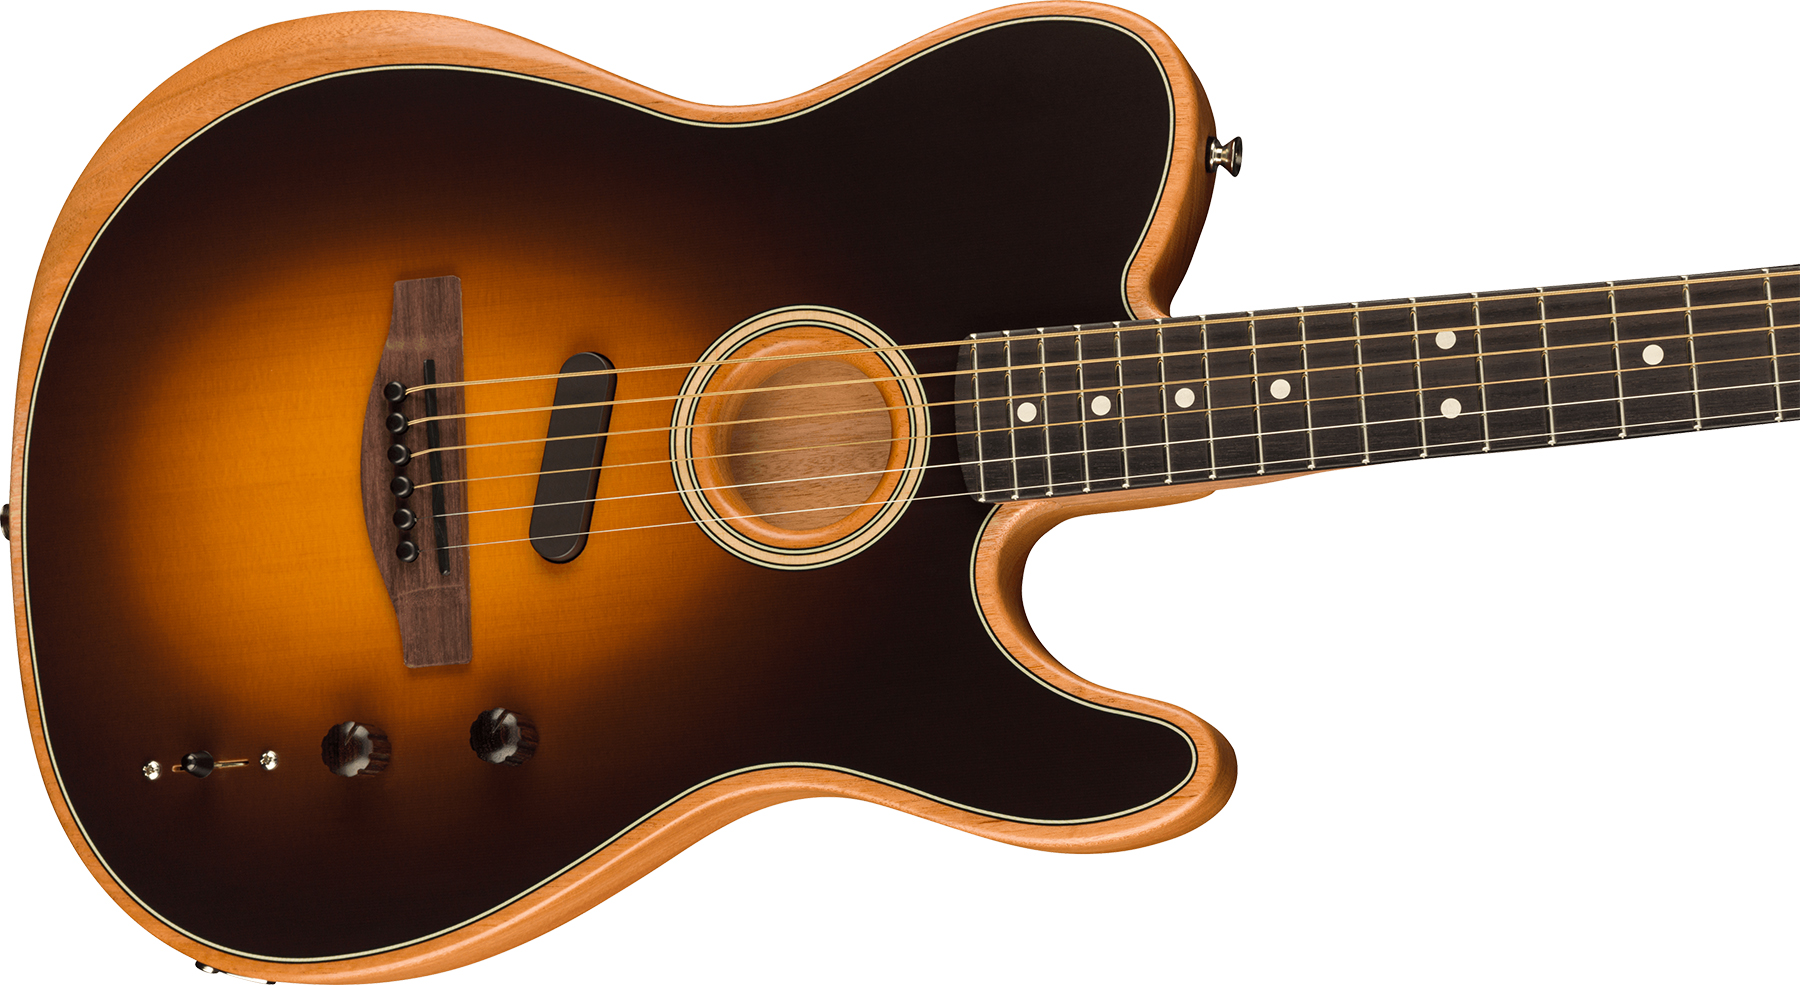 Fender Acoustasonic Tele Player Mex Epicea Acajou Rw - Shadow Burst - Elektroakustische Gitarre - Variation 2